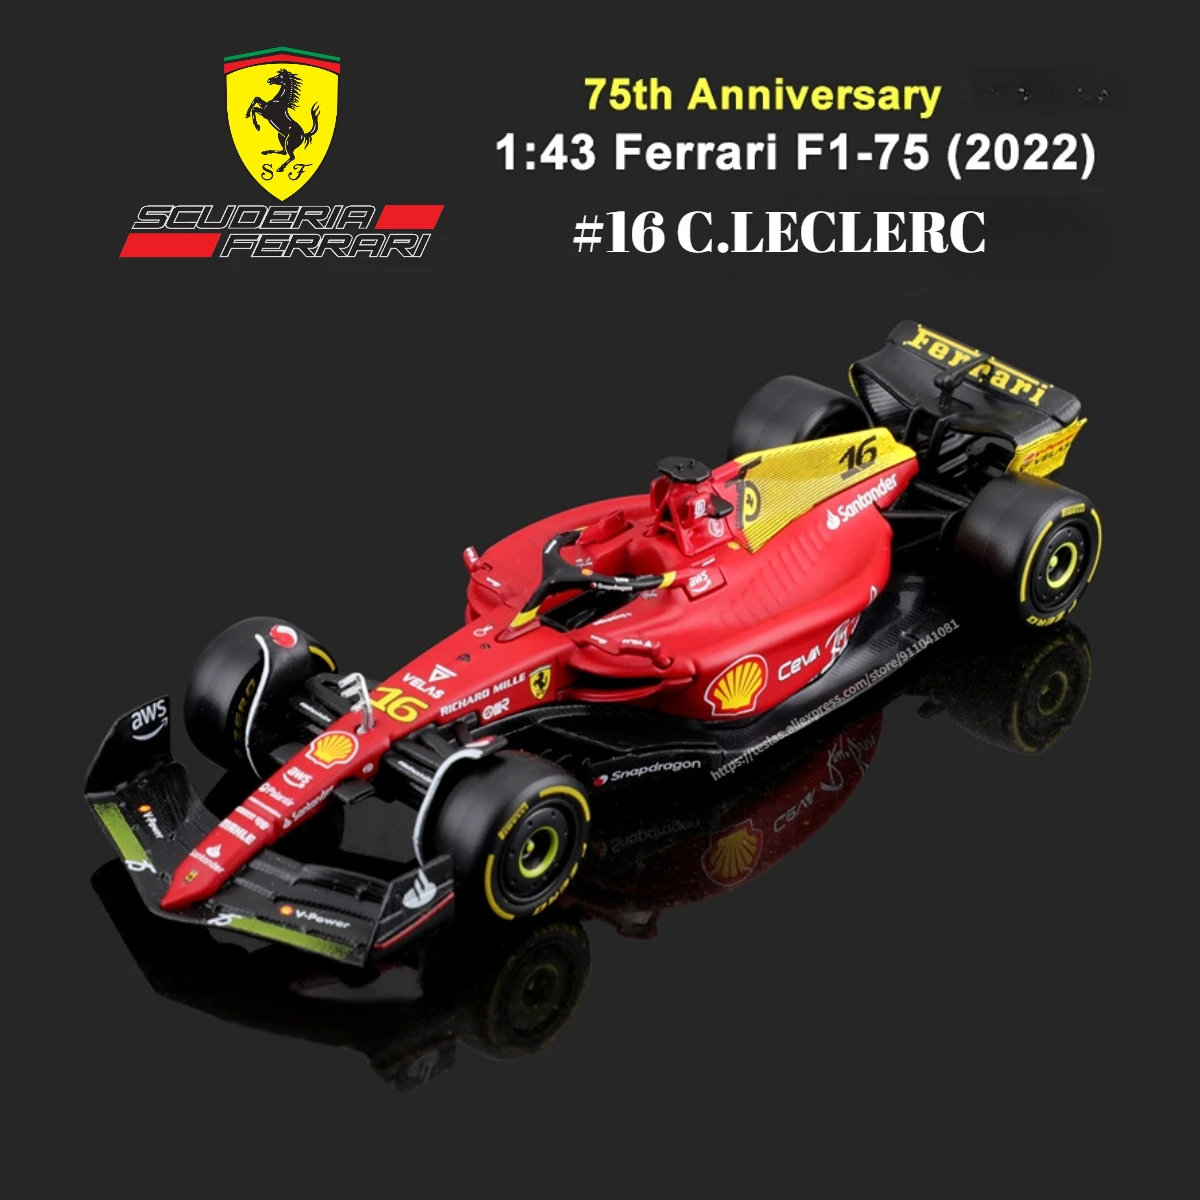 

Bburago F1 2022 Car Model Scale 1:43 75th Ferrari F1-75 Leclerc Sainz Alfa Romeo Mclaren Red Bull Racing Mercedes Formula 1 Toy